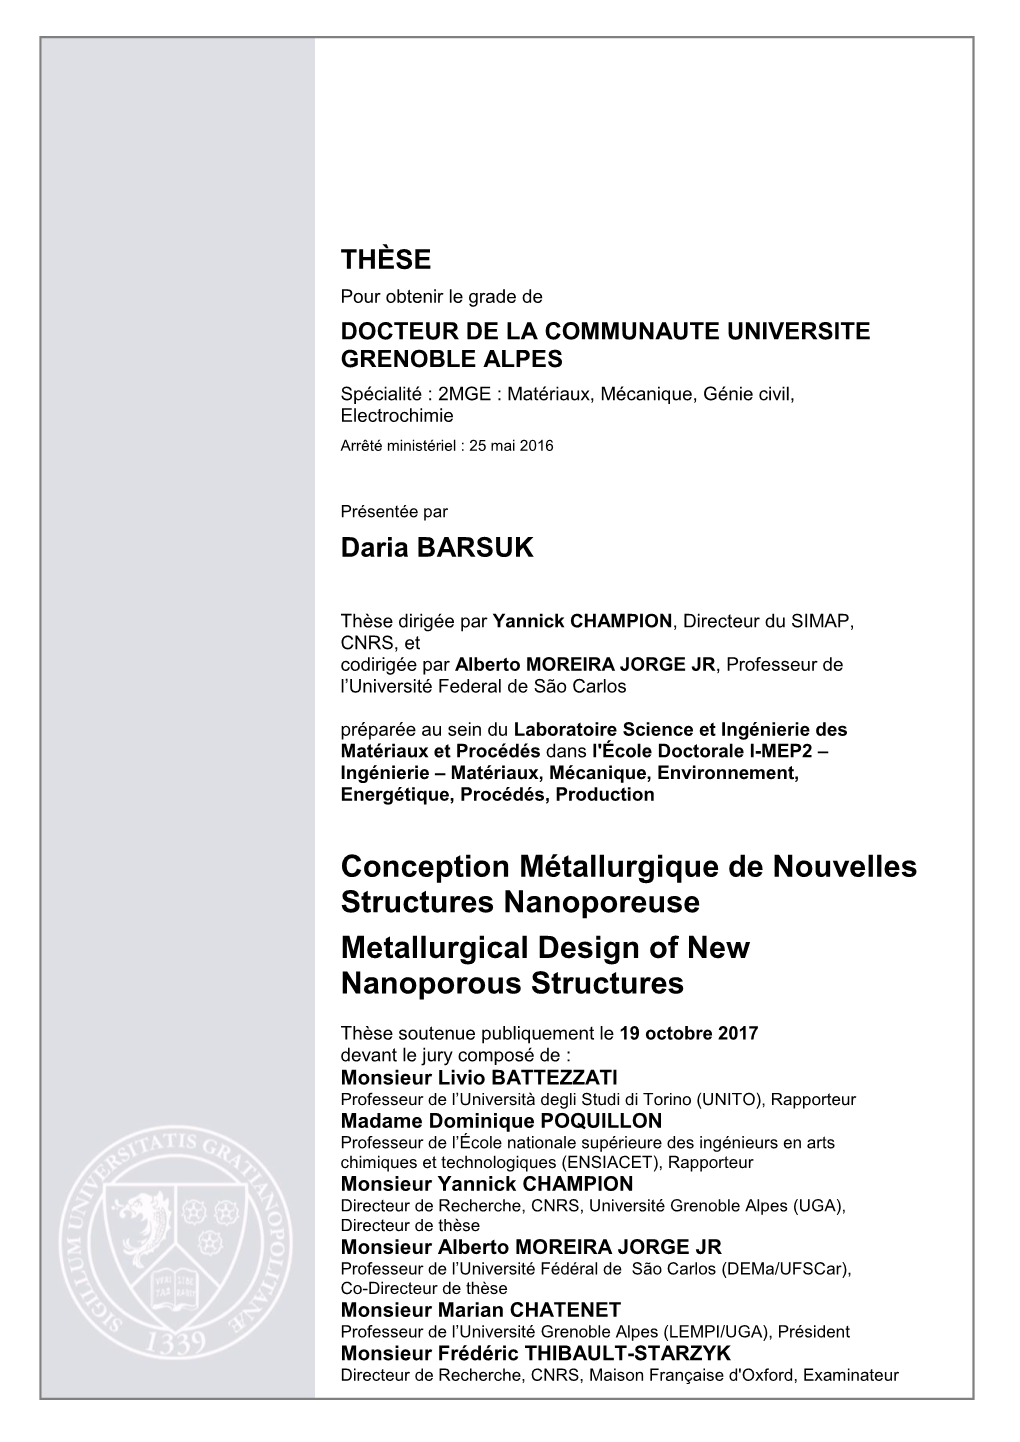 Conception Métallurgique De Nouvelles Structures Nanoporeuse Metallurgical Design of New Nanoporous Structures